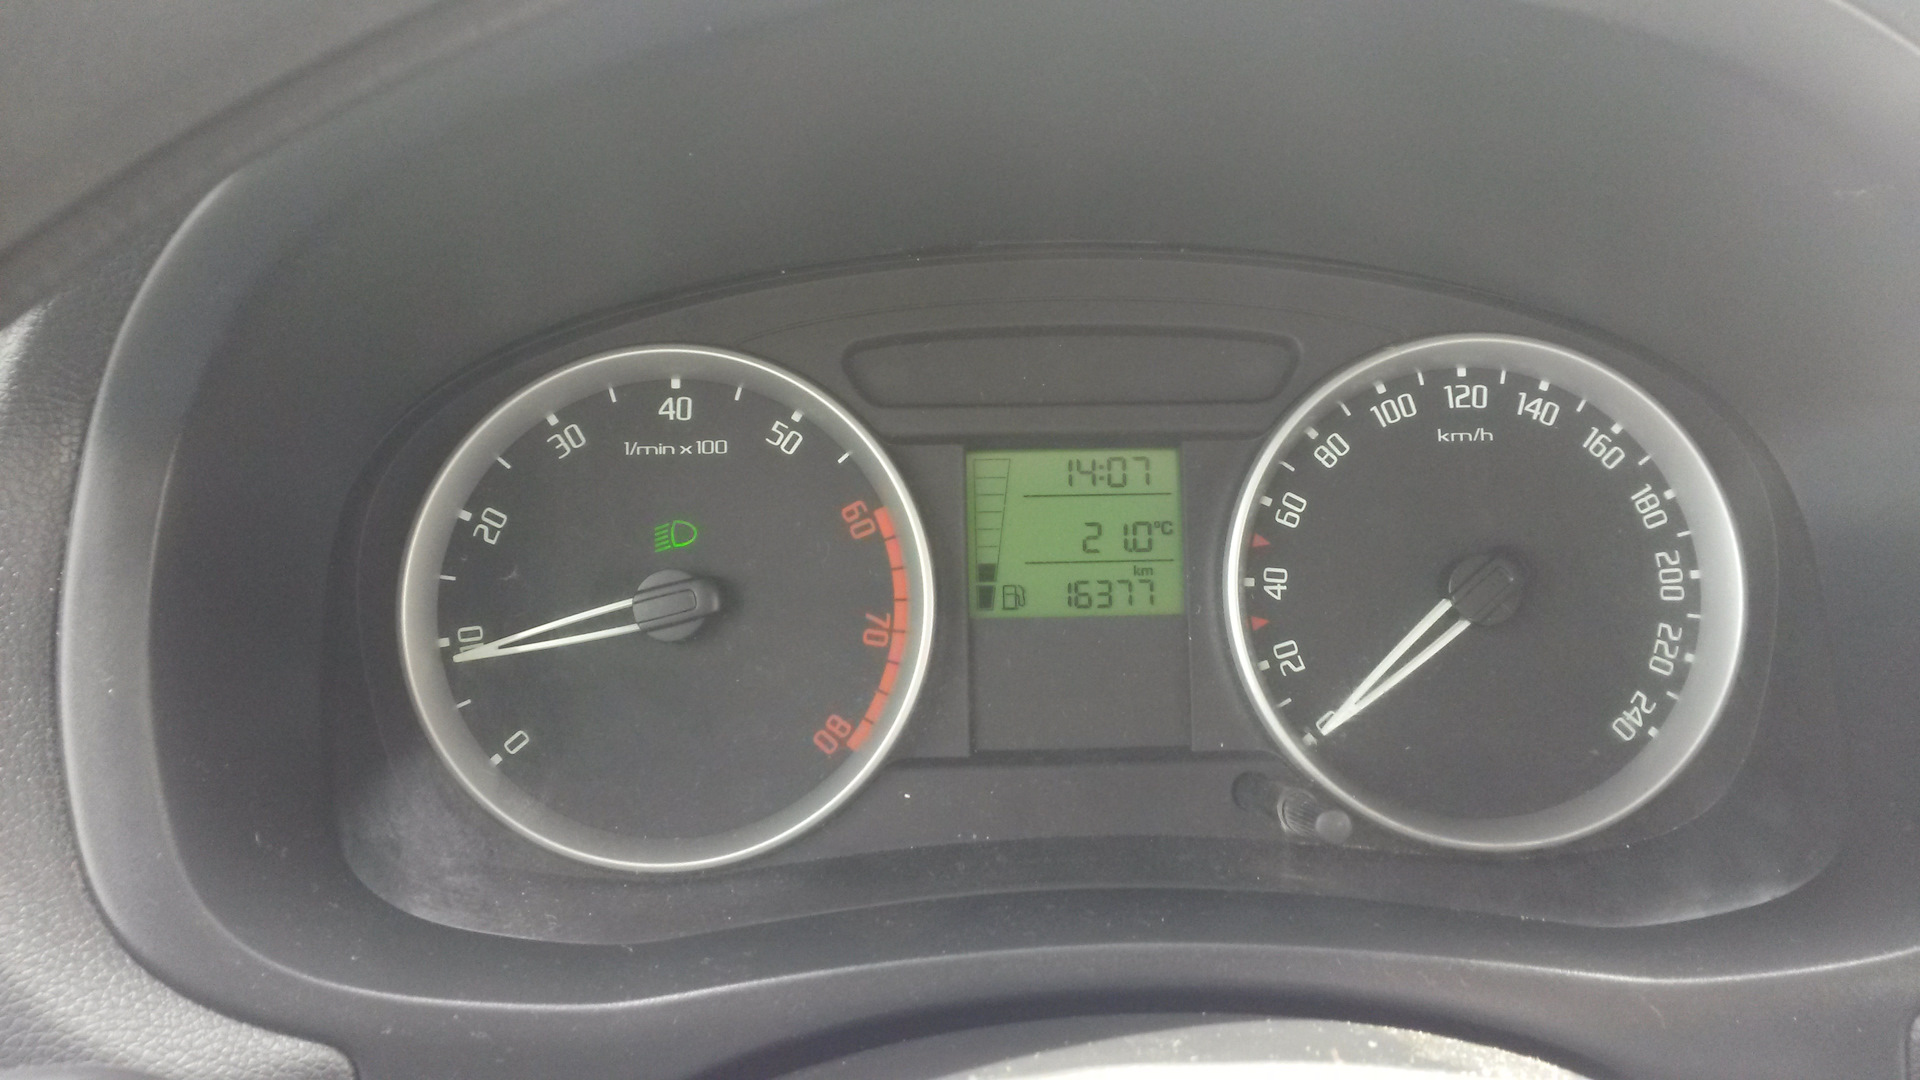 Термометр в Hyundai Tucson неправильно показывает температуру на улице